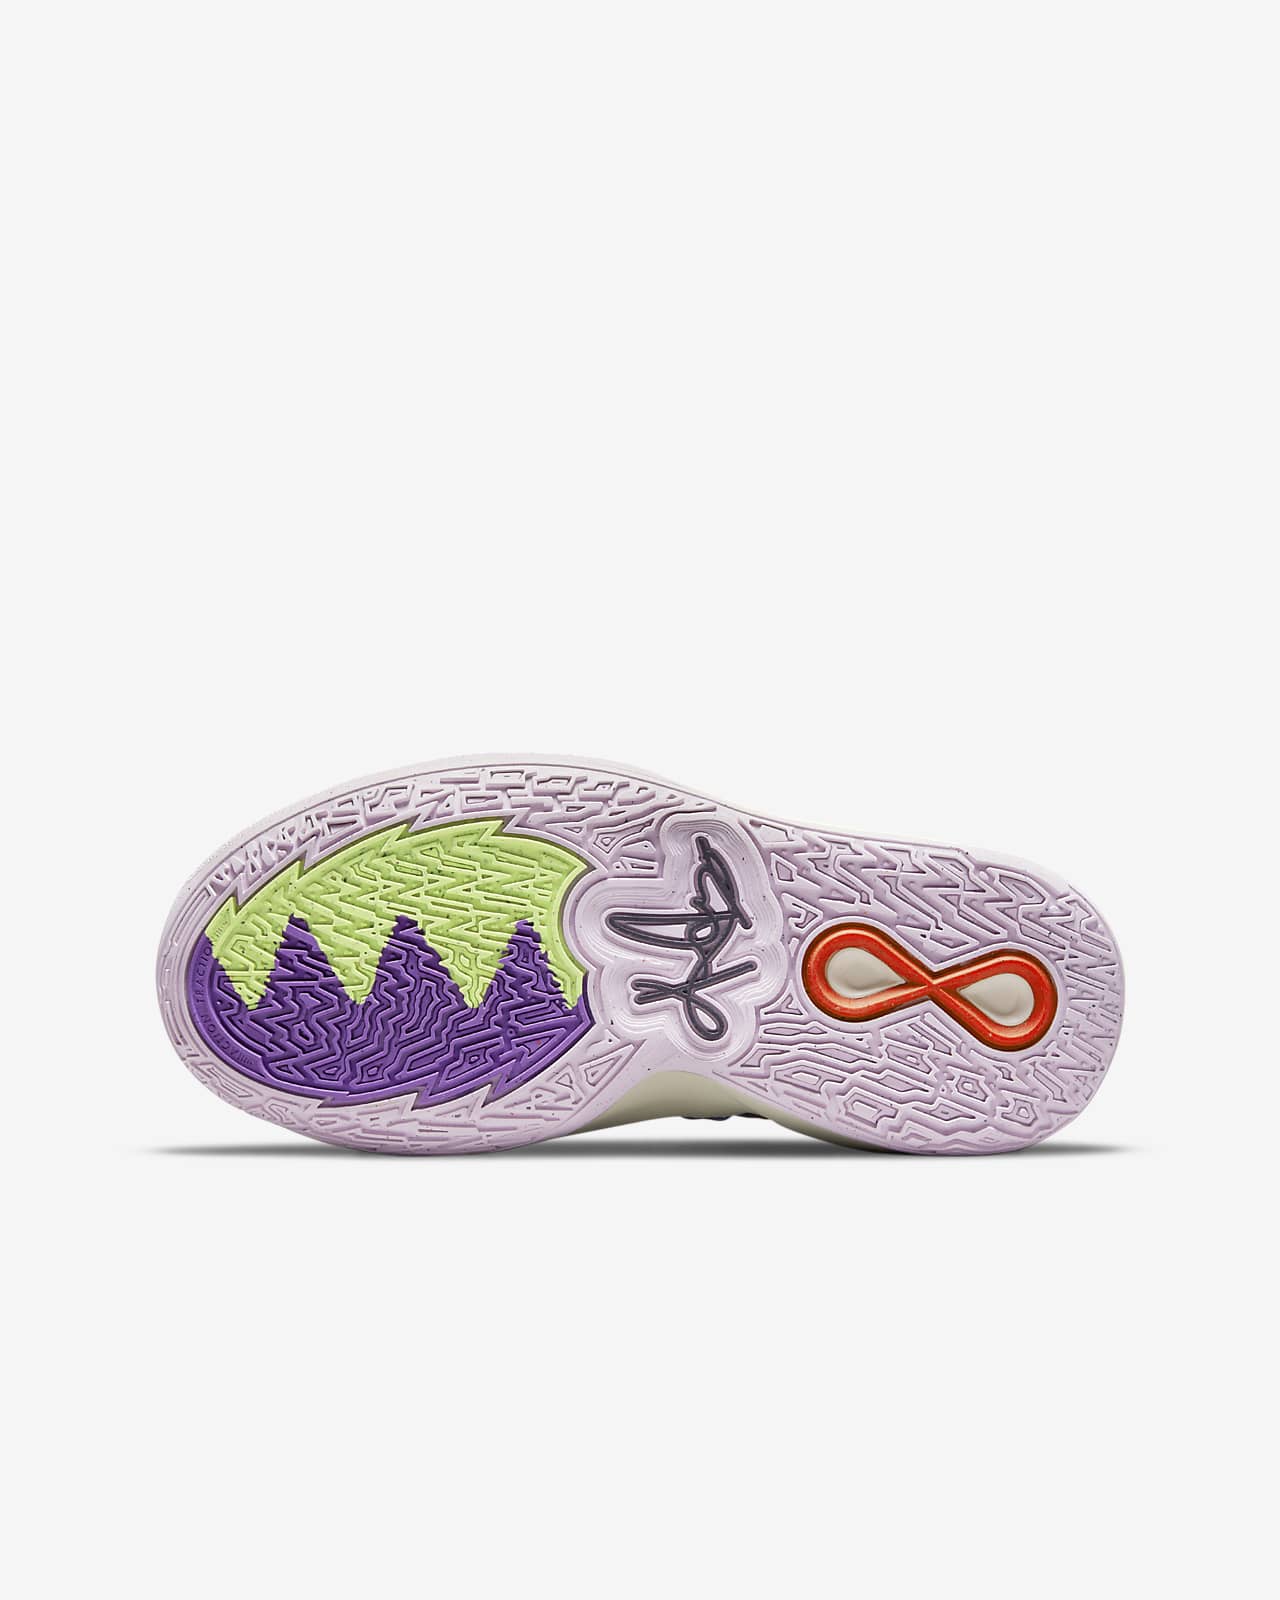 Kyrie Infinity Big Kids' Basketball Shoes. Nike.com